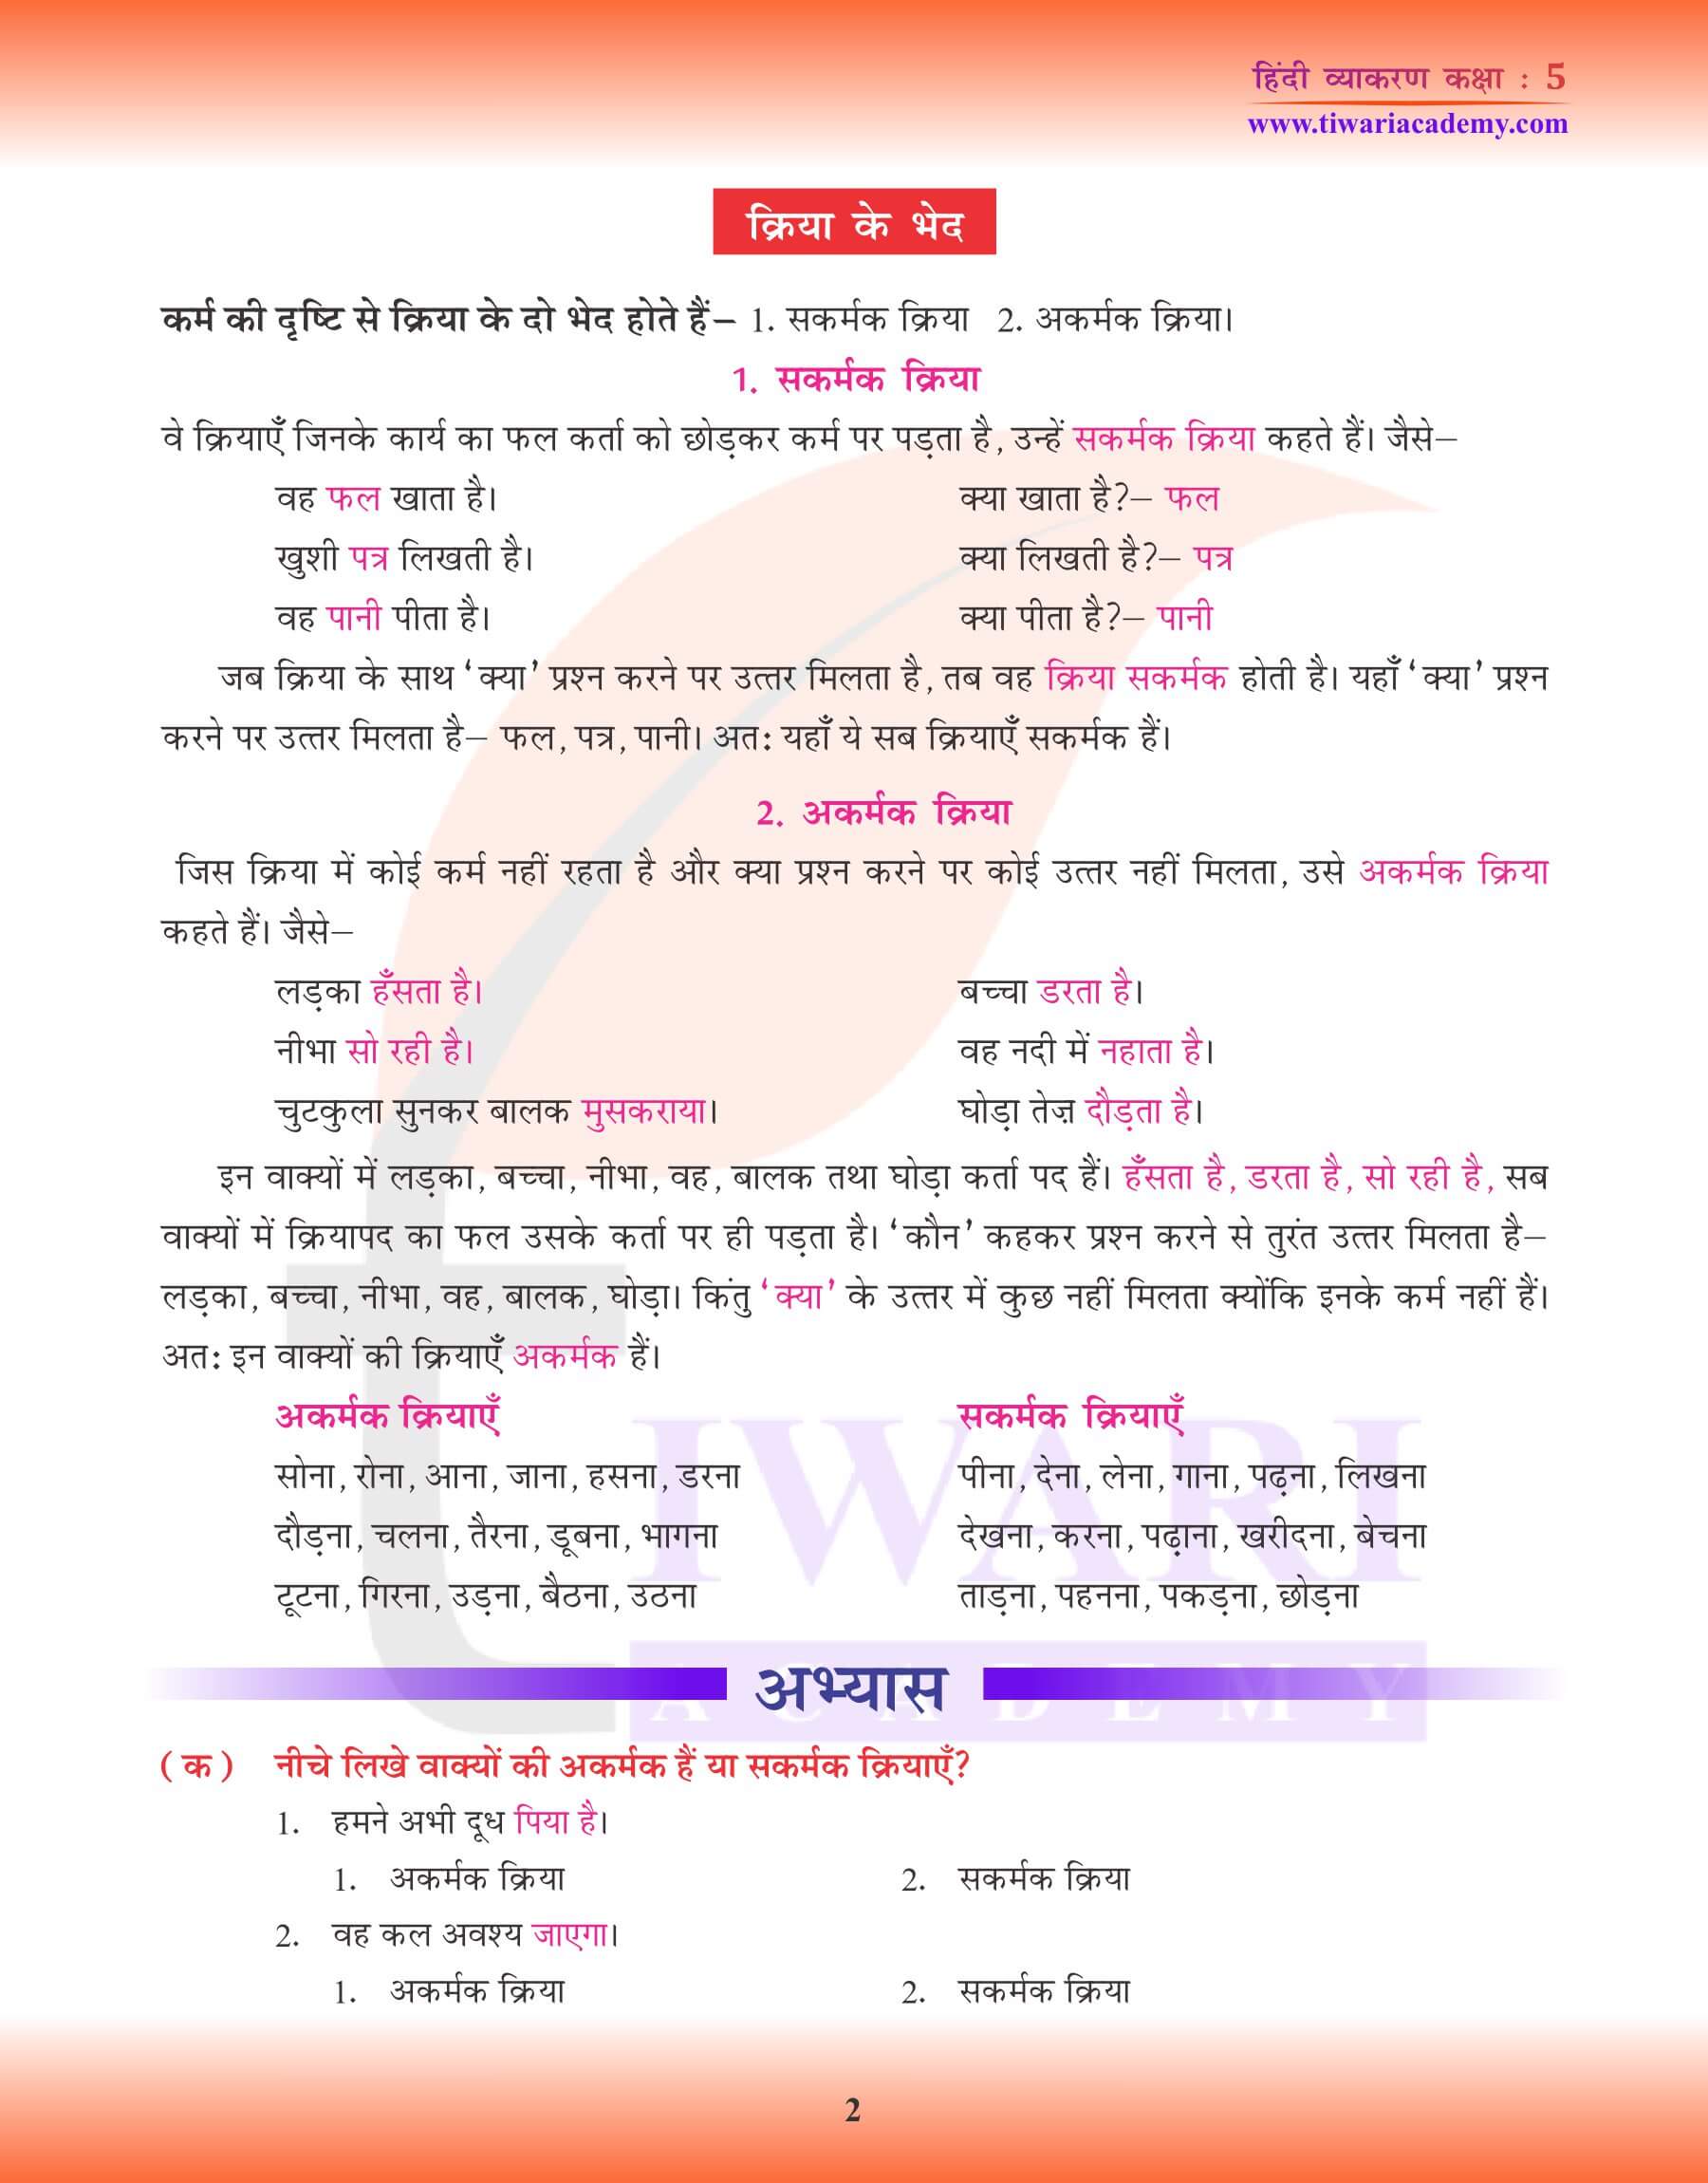 कक्षा 5 हिंदी व्याकरण क्रिया के लिए उदाहरण